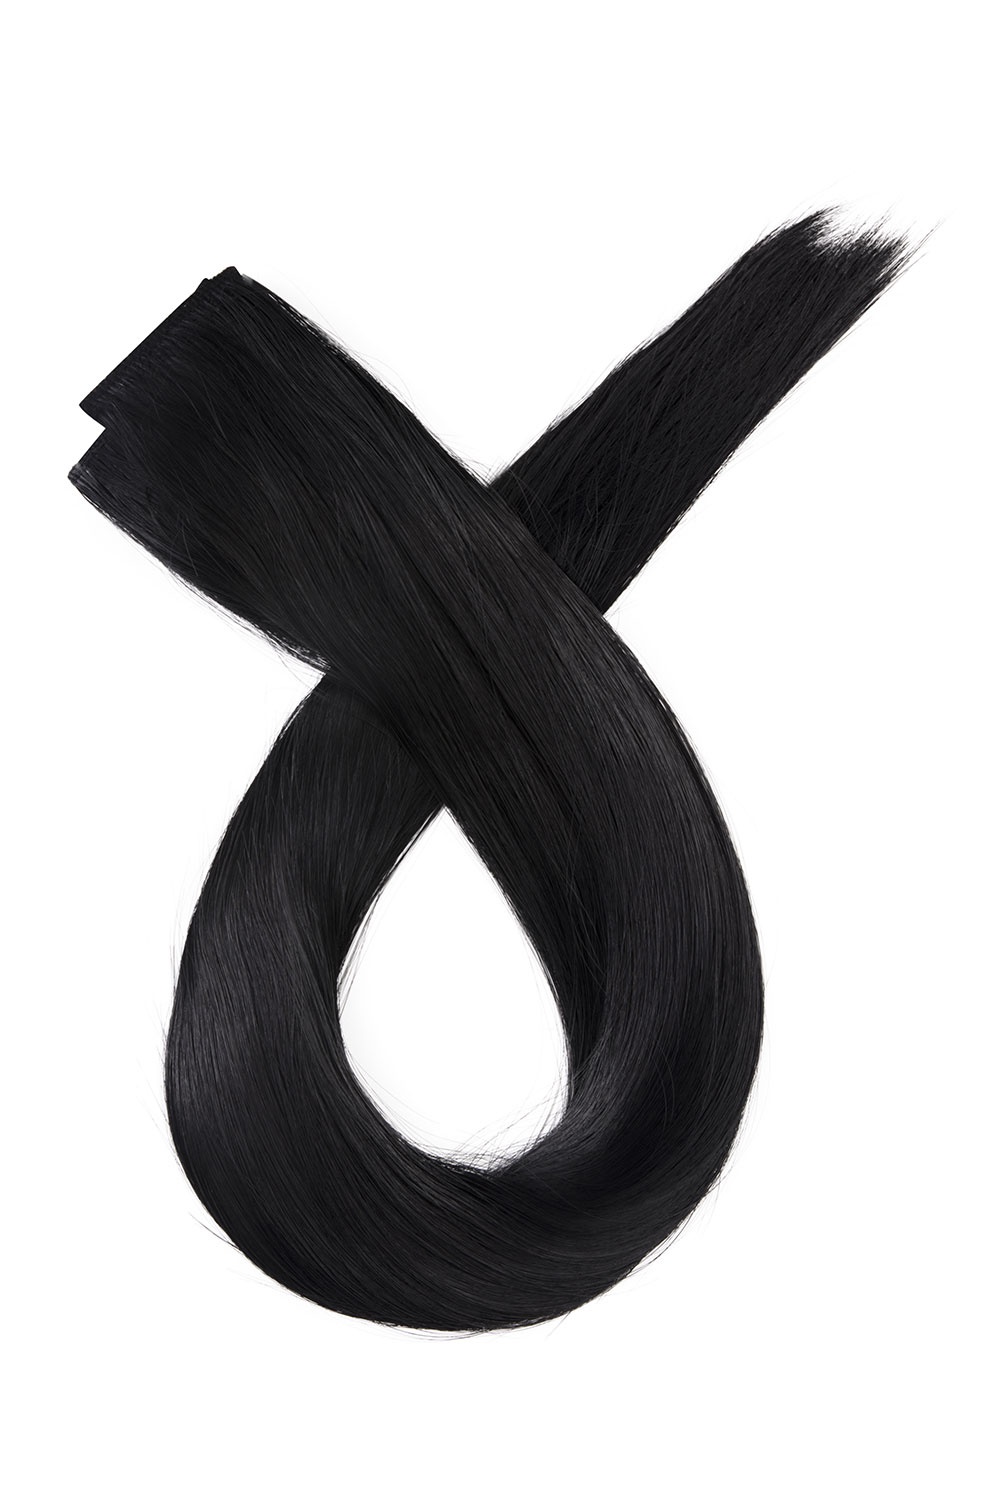 Čierne clip in vlasy, 70cm, 180g, farba 1